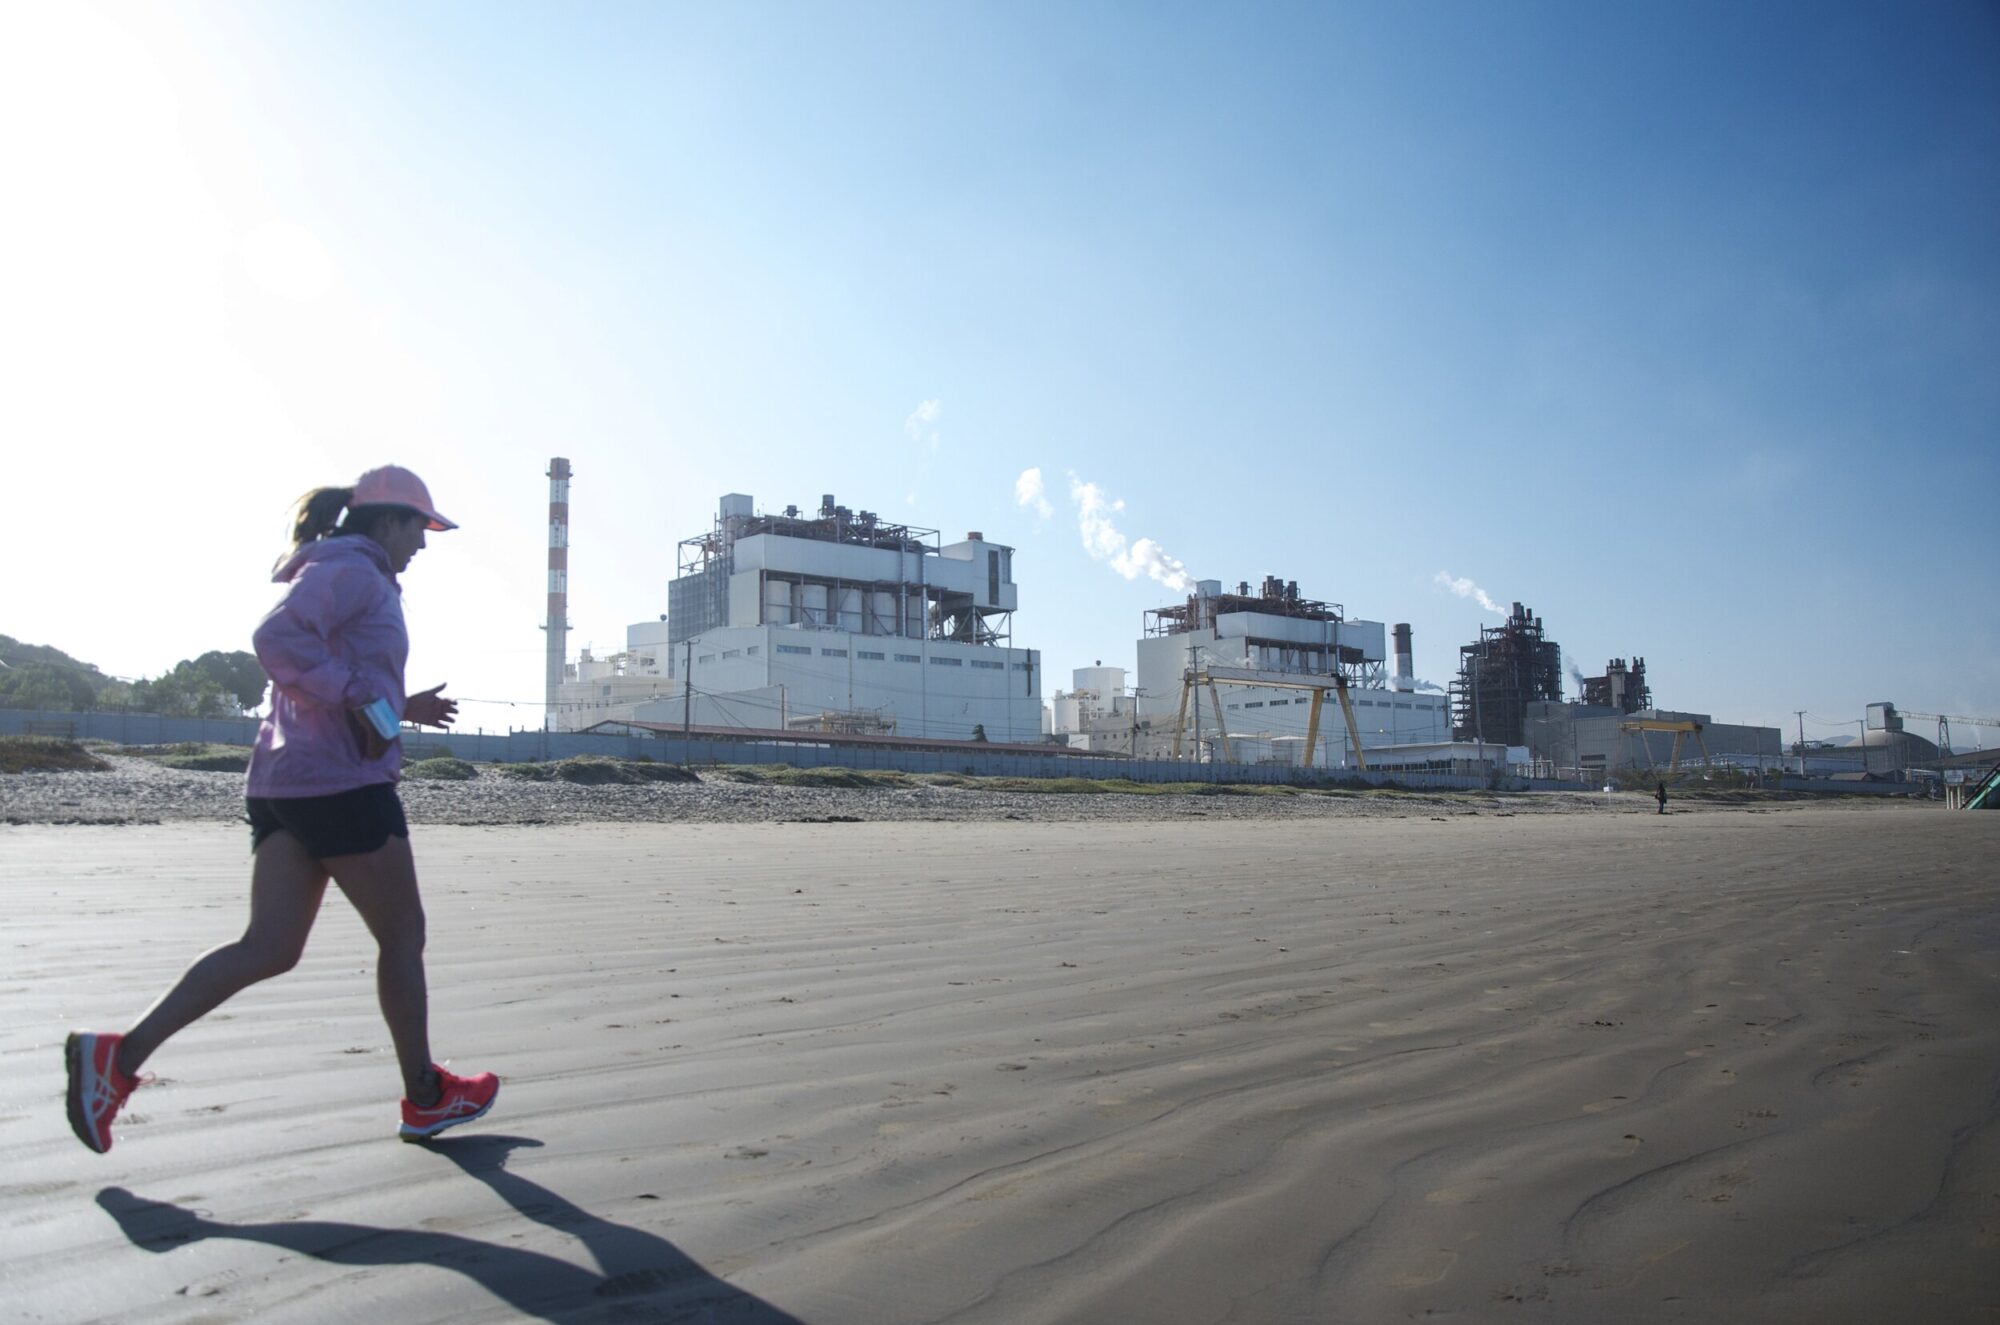 Uma mulher corre em uma praia no Chile, em frente a um parque industrial.